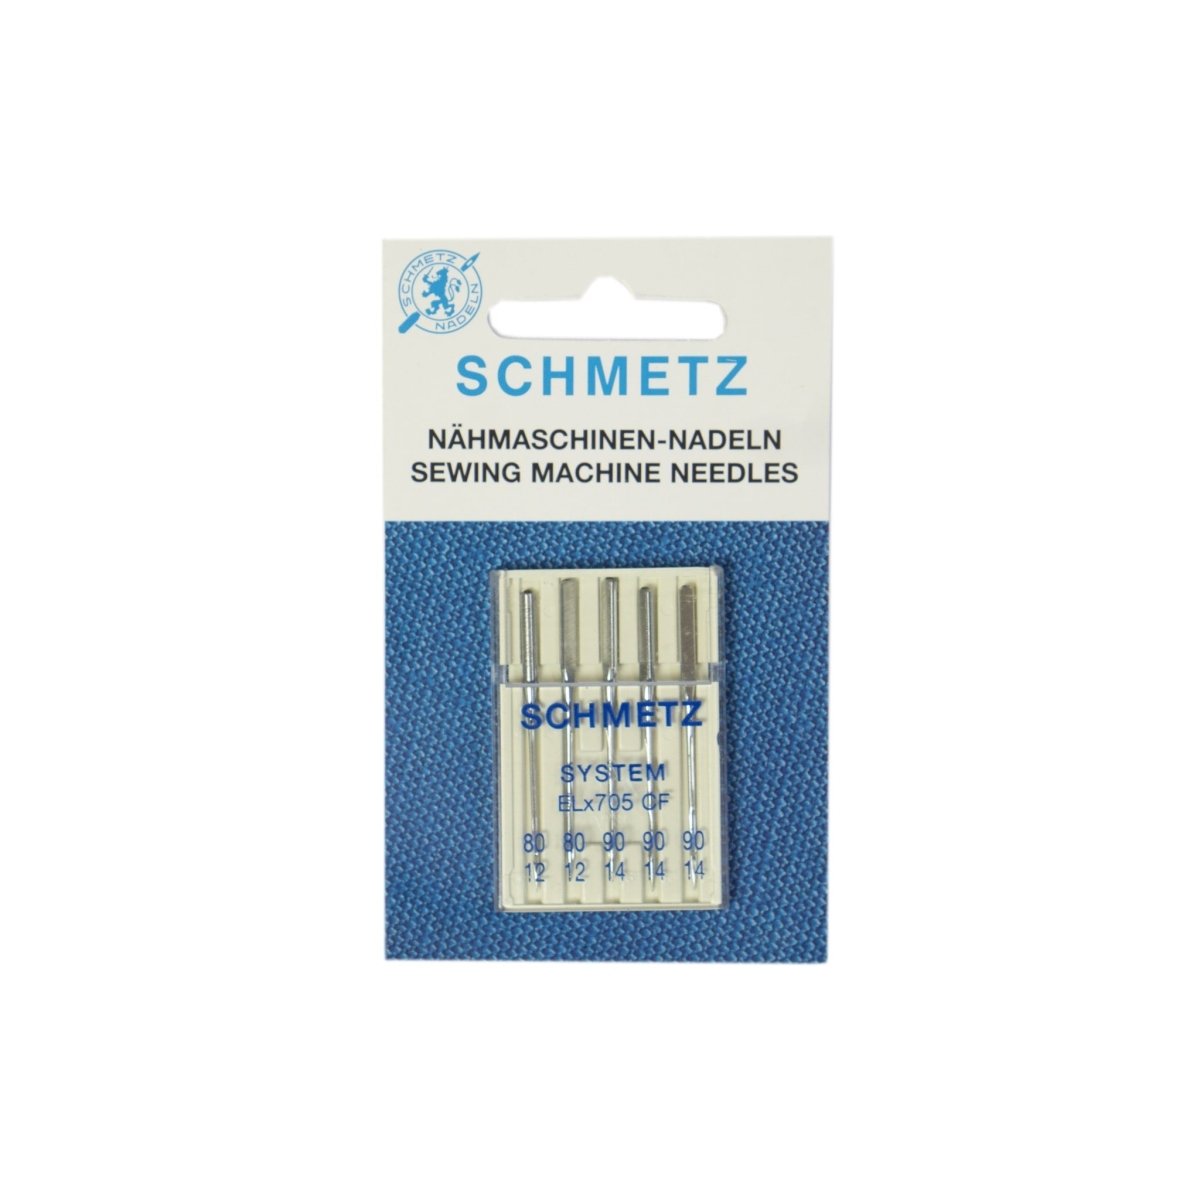 Schmetz - Overlock ELx705